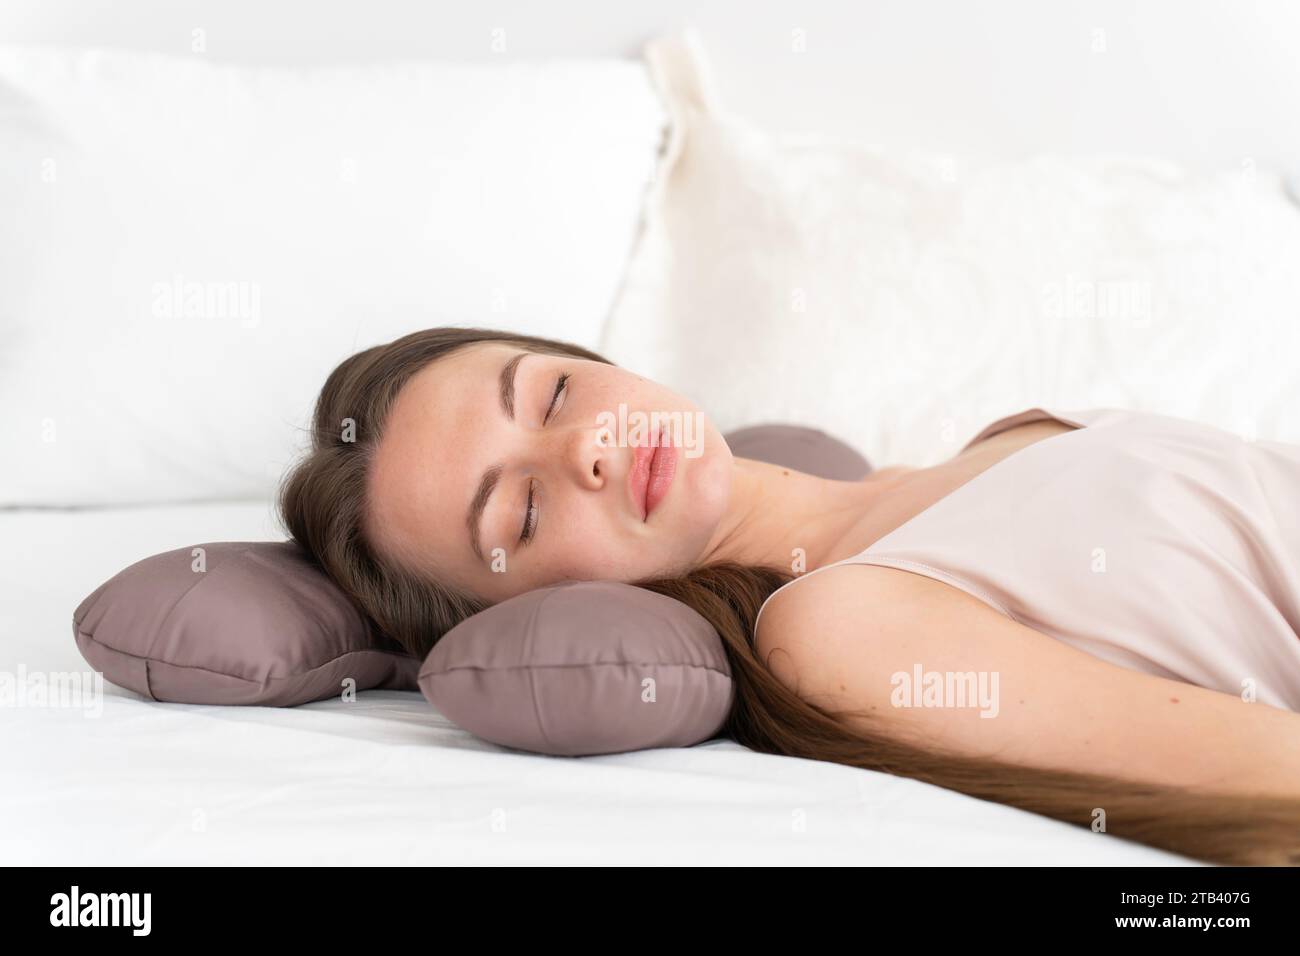 Weißes Mädchen 20-25 Jahre alt in Seidenwäsche schläft auf einem Schönheitskissen auf dem Bett im Schlafzimmer Stockfoto